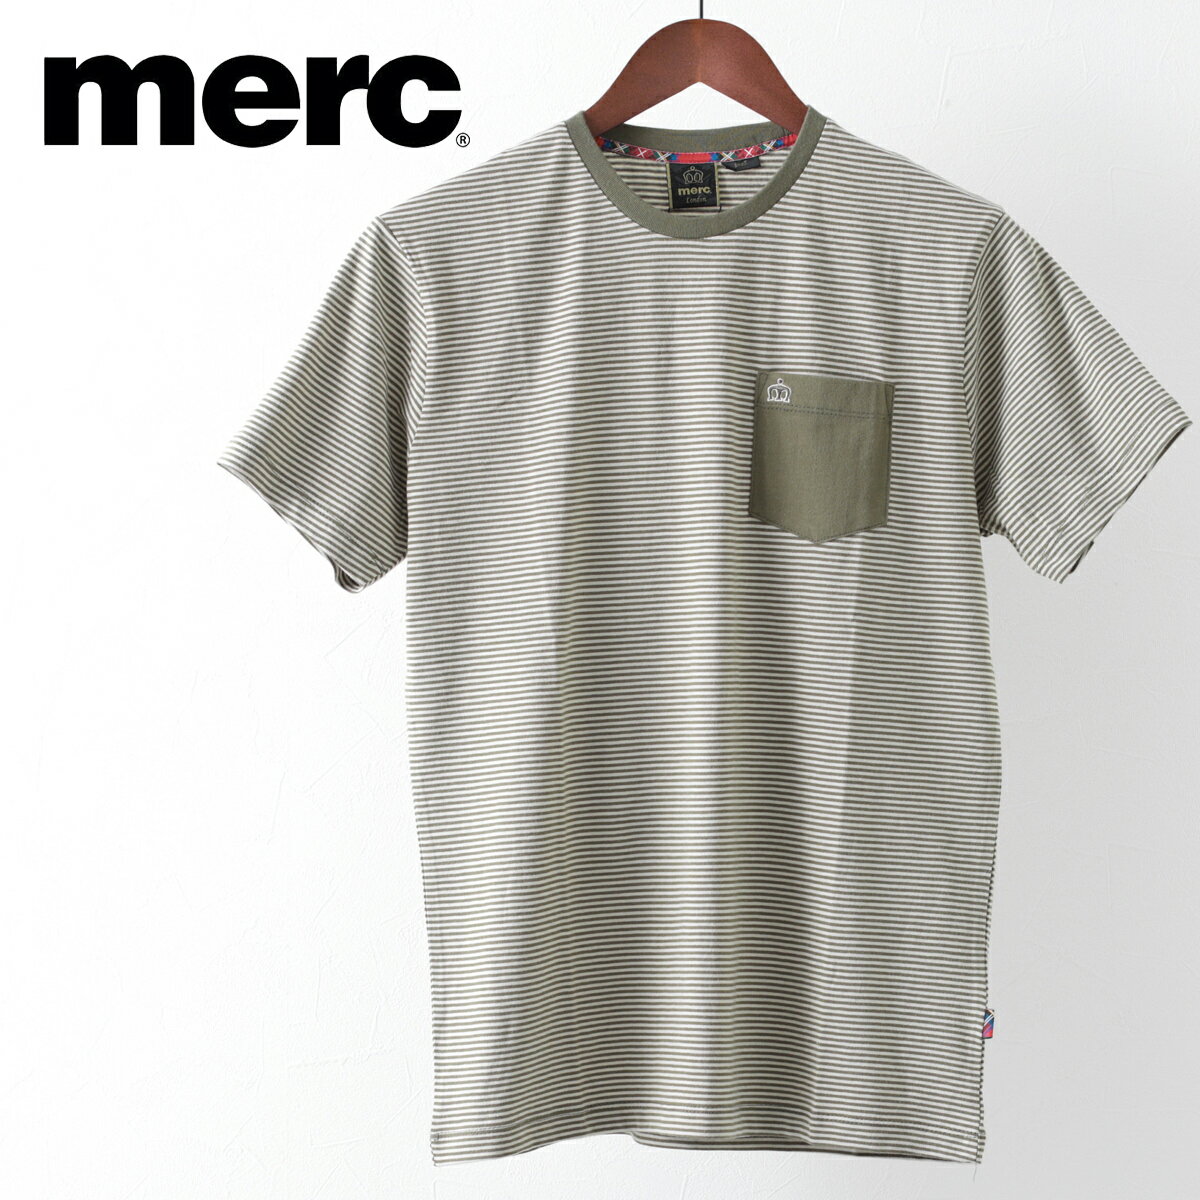 メルクロンドン メンズ Tシャツ Merc London ストライプ ボーダー ポケット付 W1 プレミアム ダークセージ モッズファッション ギフト トラッド